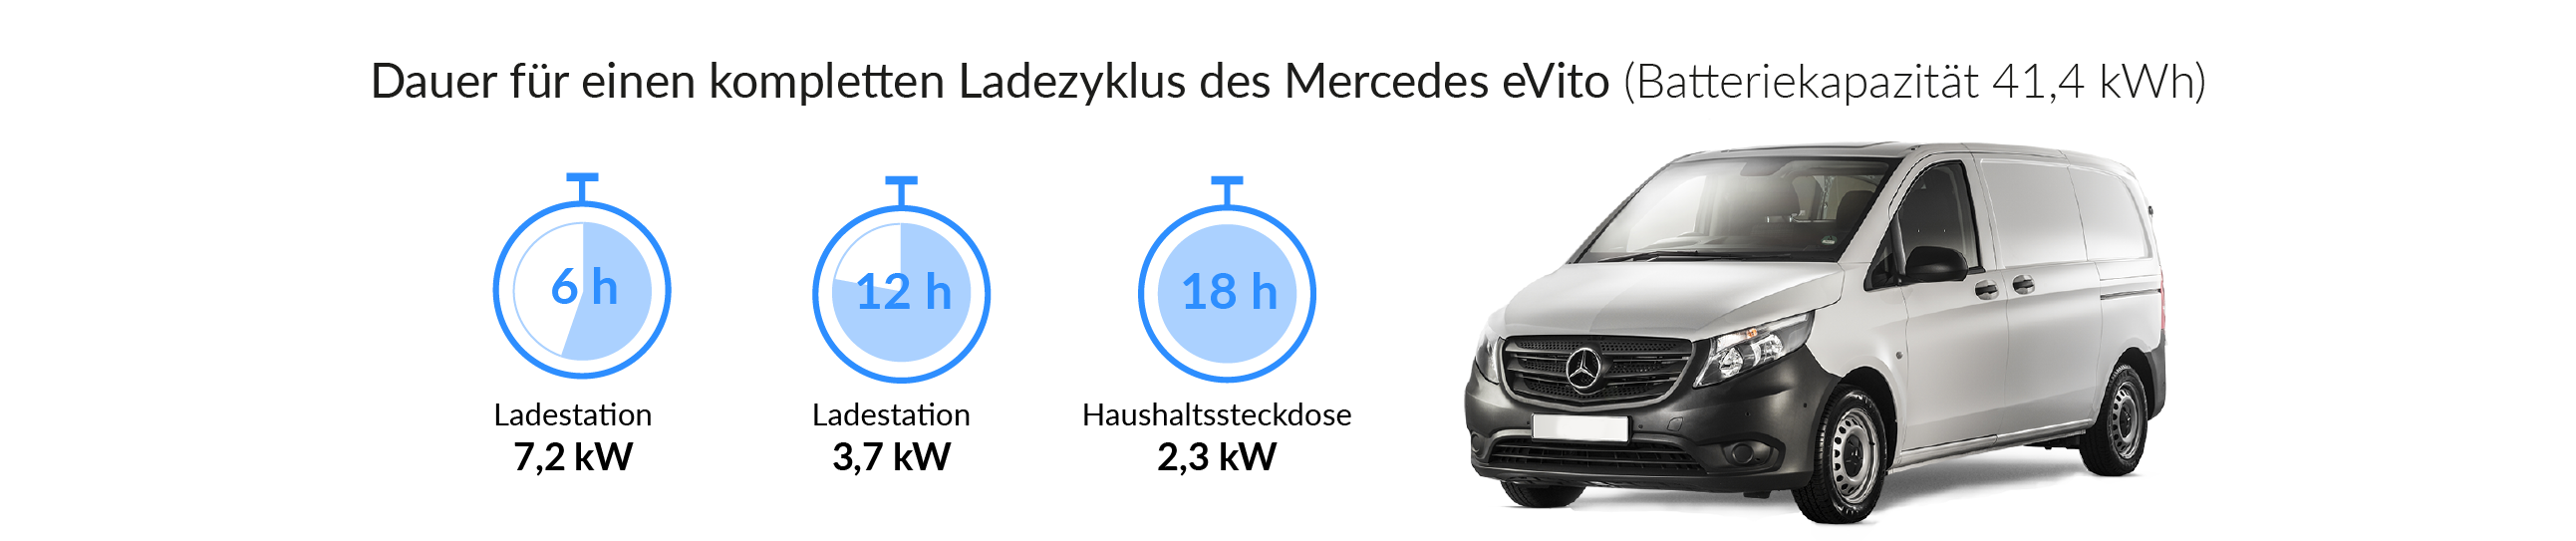 Ladezeiten des Mercedes-Benz eVito